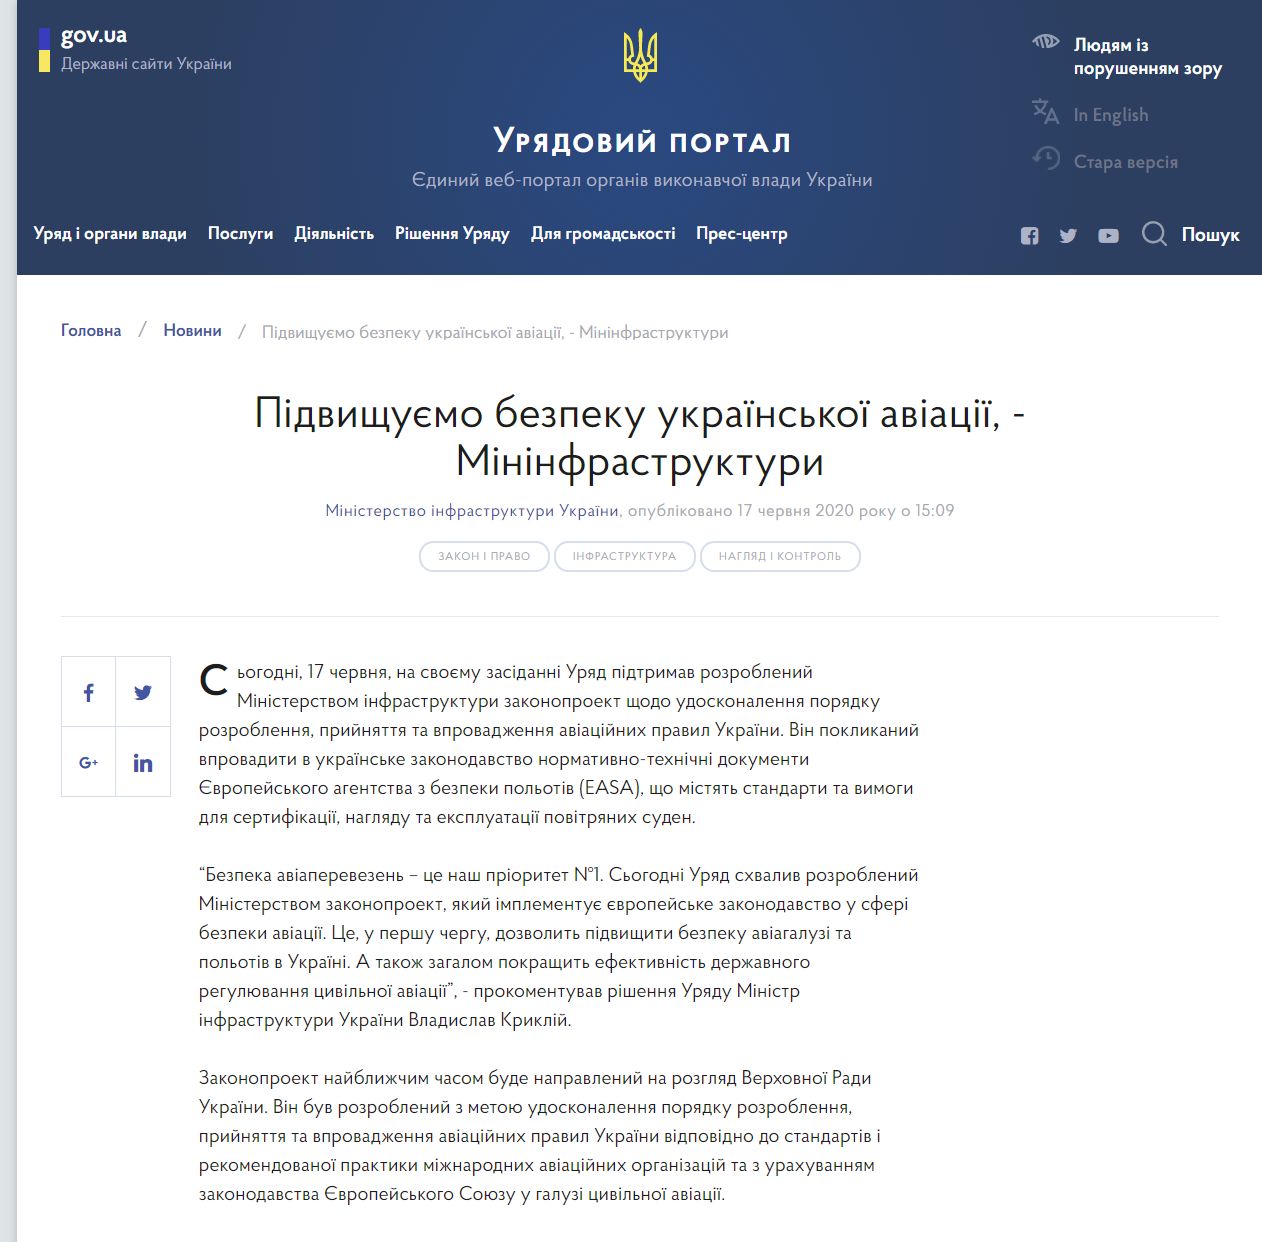 https://www.kmu.gov.ua/news/pidvishchuyemo-bezpeku-ukrayinskoyi-aviaciyi-mininfrastrukturi